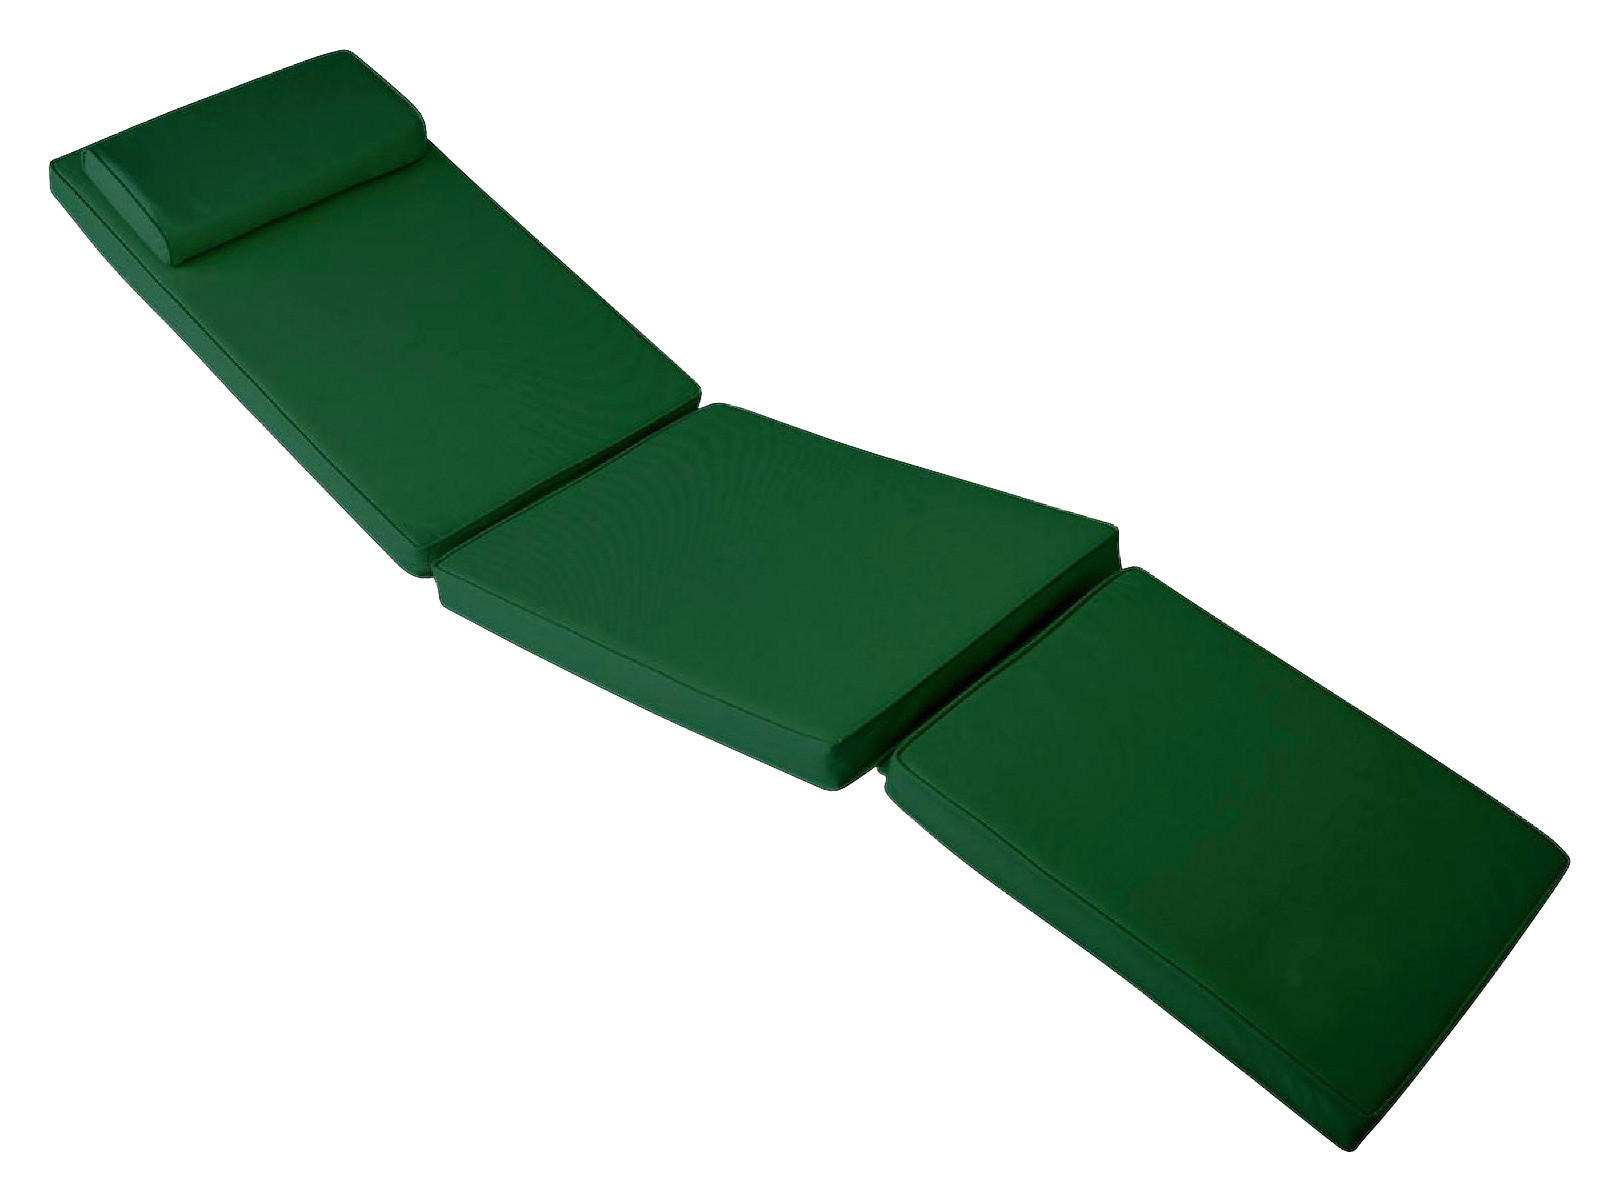 VCM Auflage für Deckchair grün Polyester-Mischgewebe B/L: ca. 45x188 cm Auflage_für_Deckchair - grün (45,00/188,00cm)